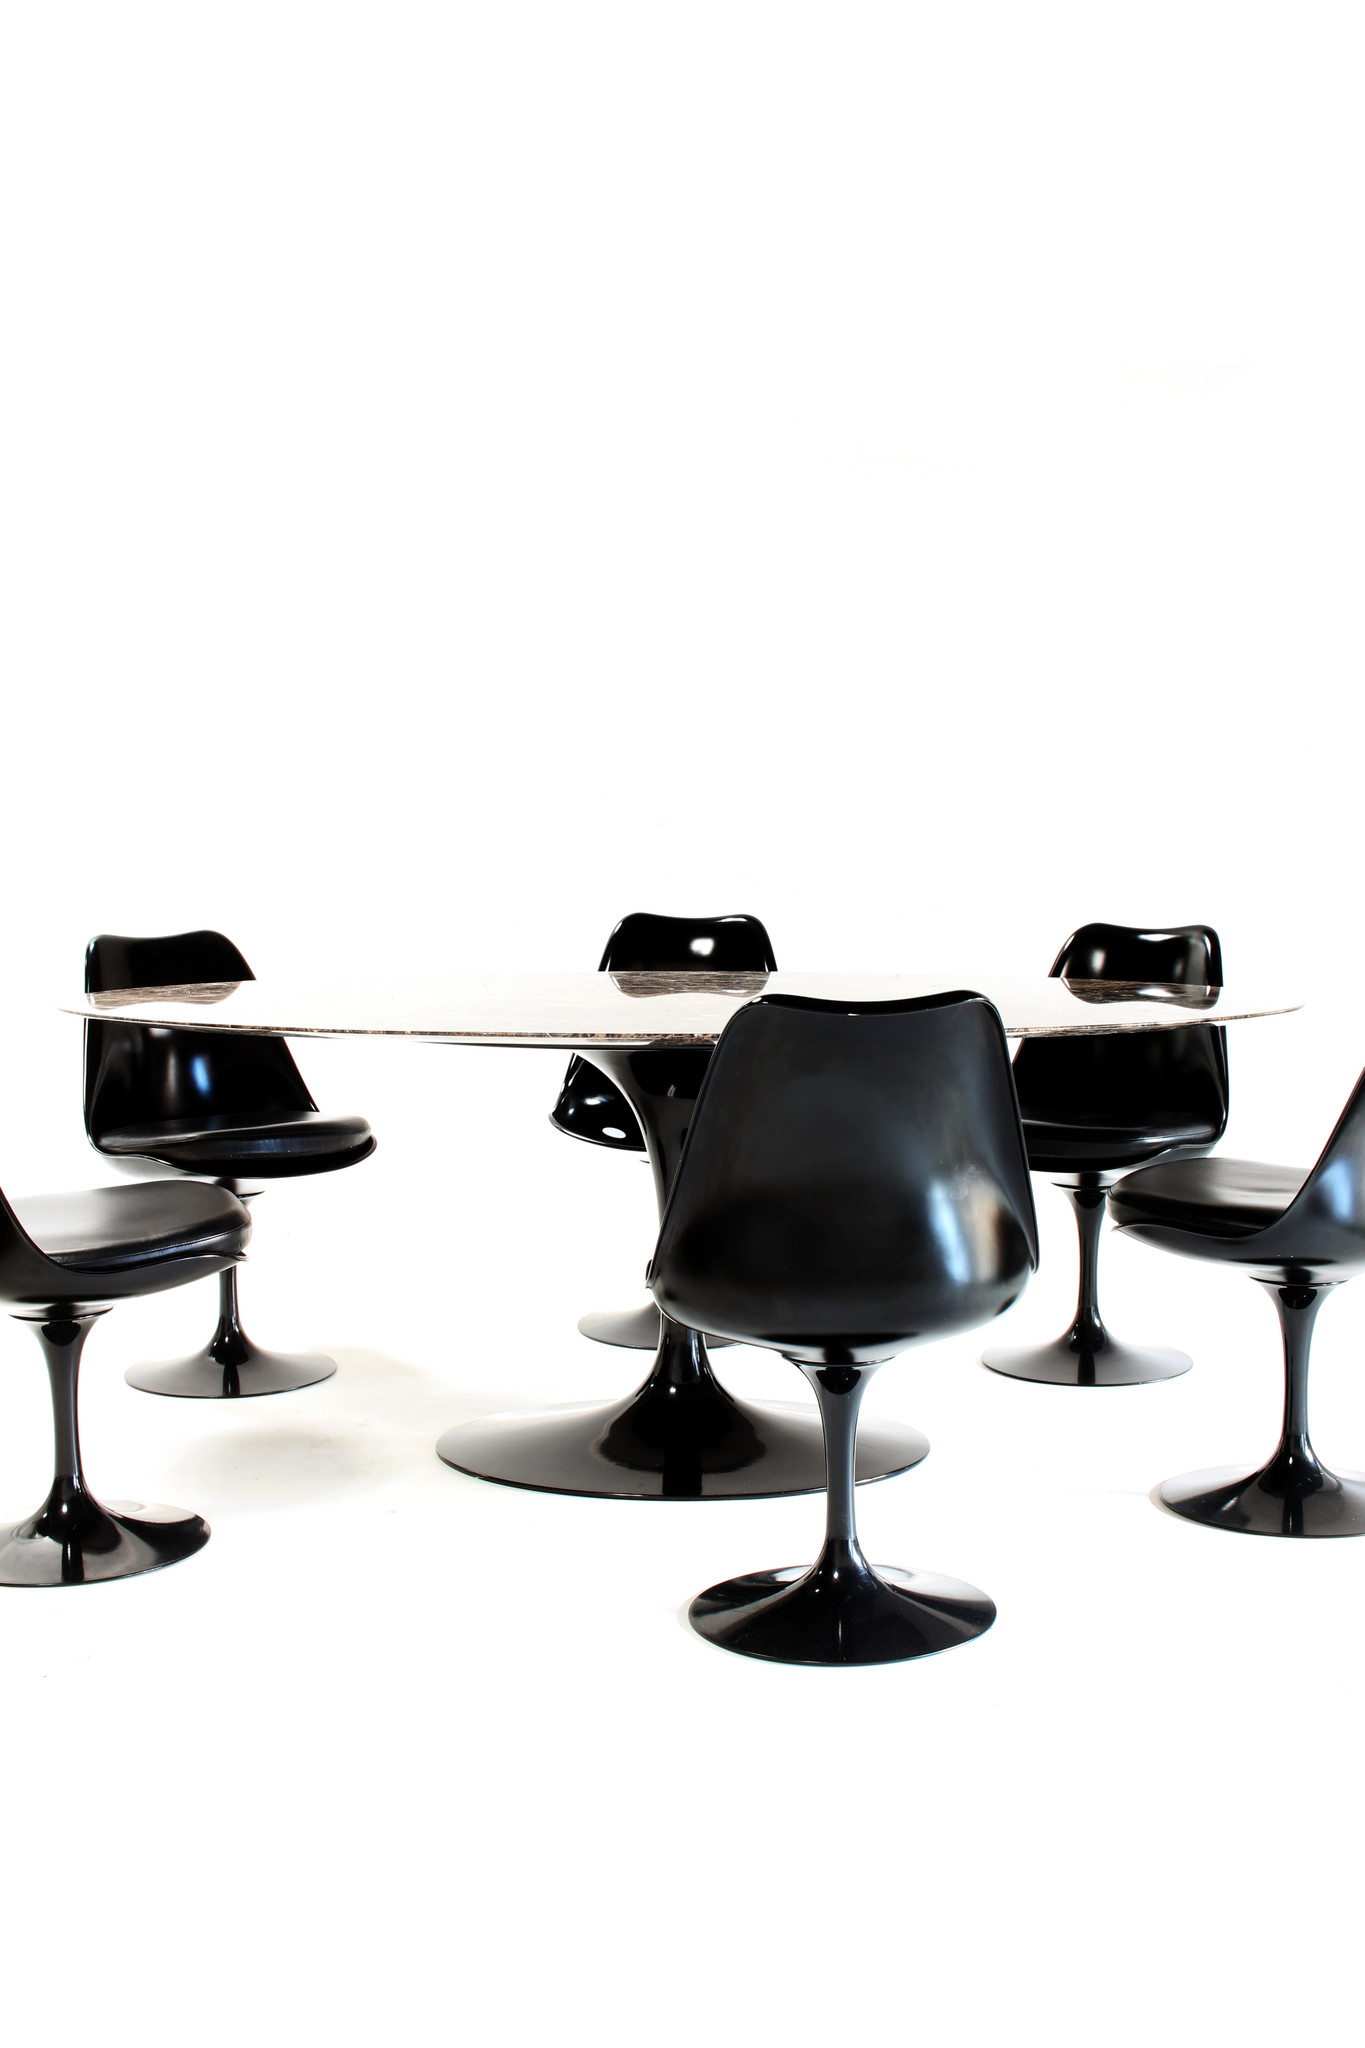 Eero Saarinen Knoll ovalen tafel met bijhorende tulip stoelen.